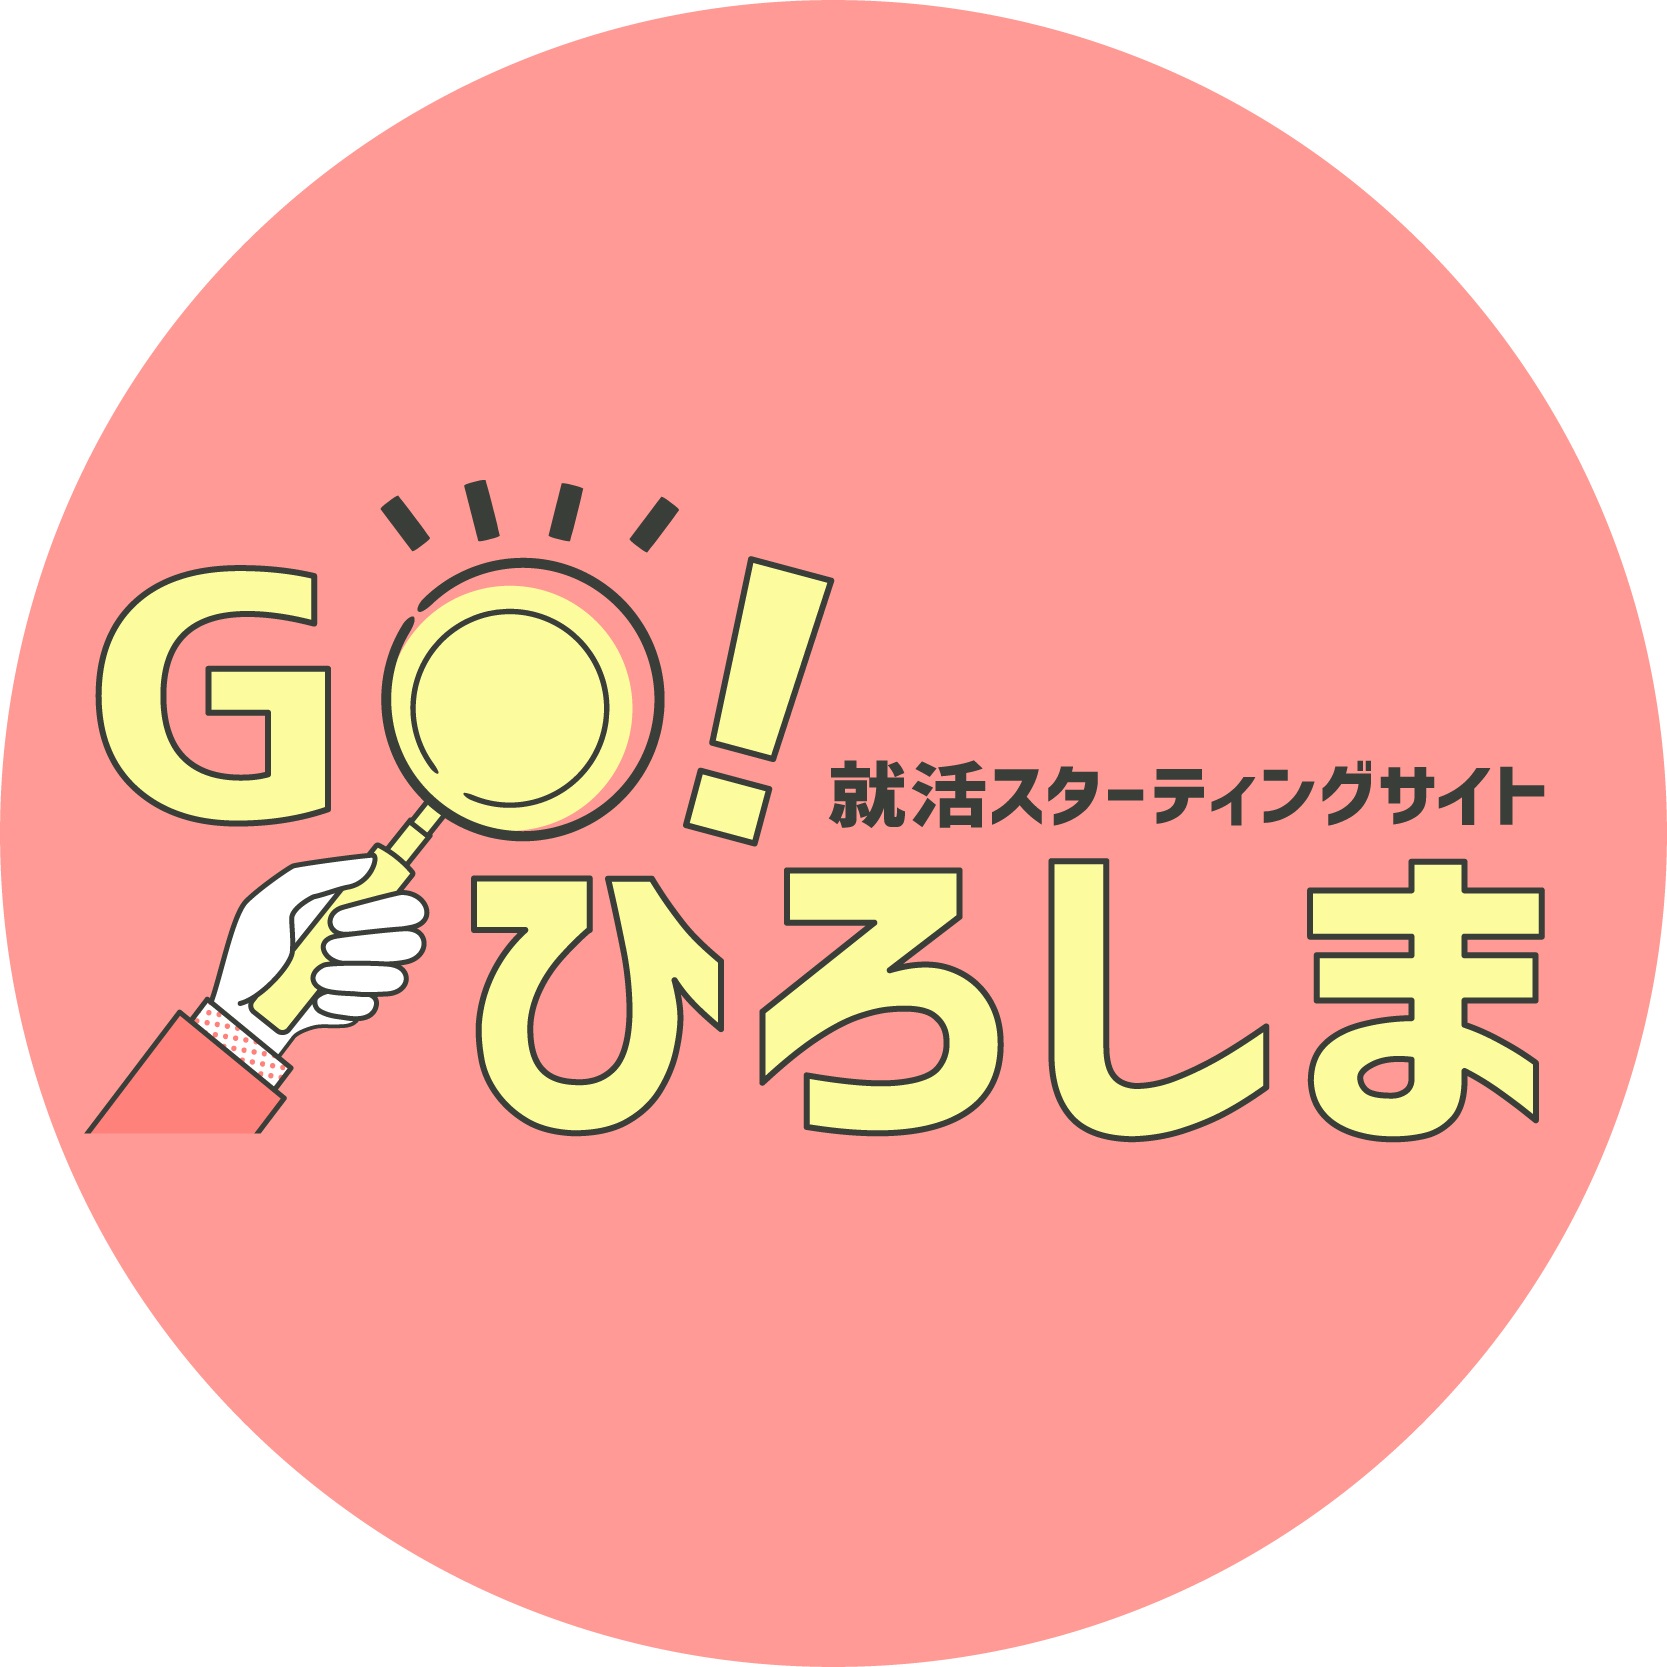 就活スターティングサイト 「Go!ひろしま」 SNSアイコン